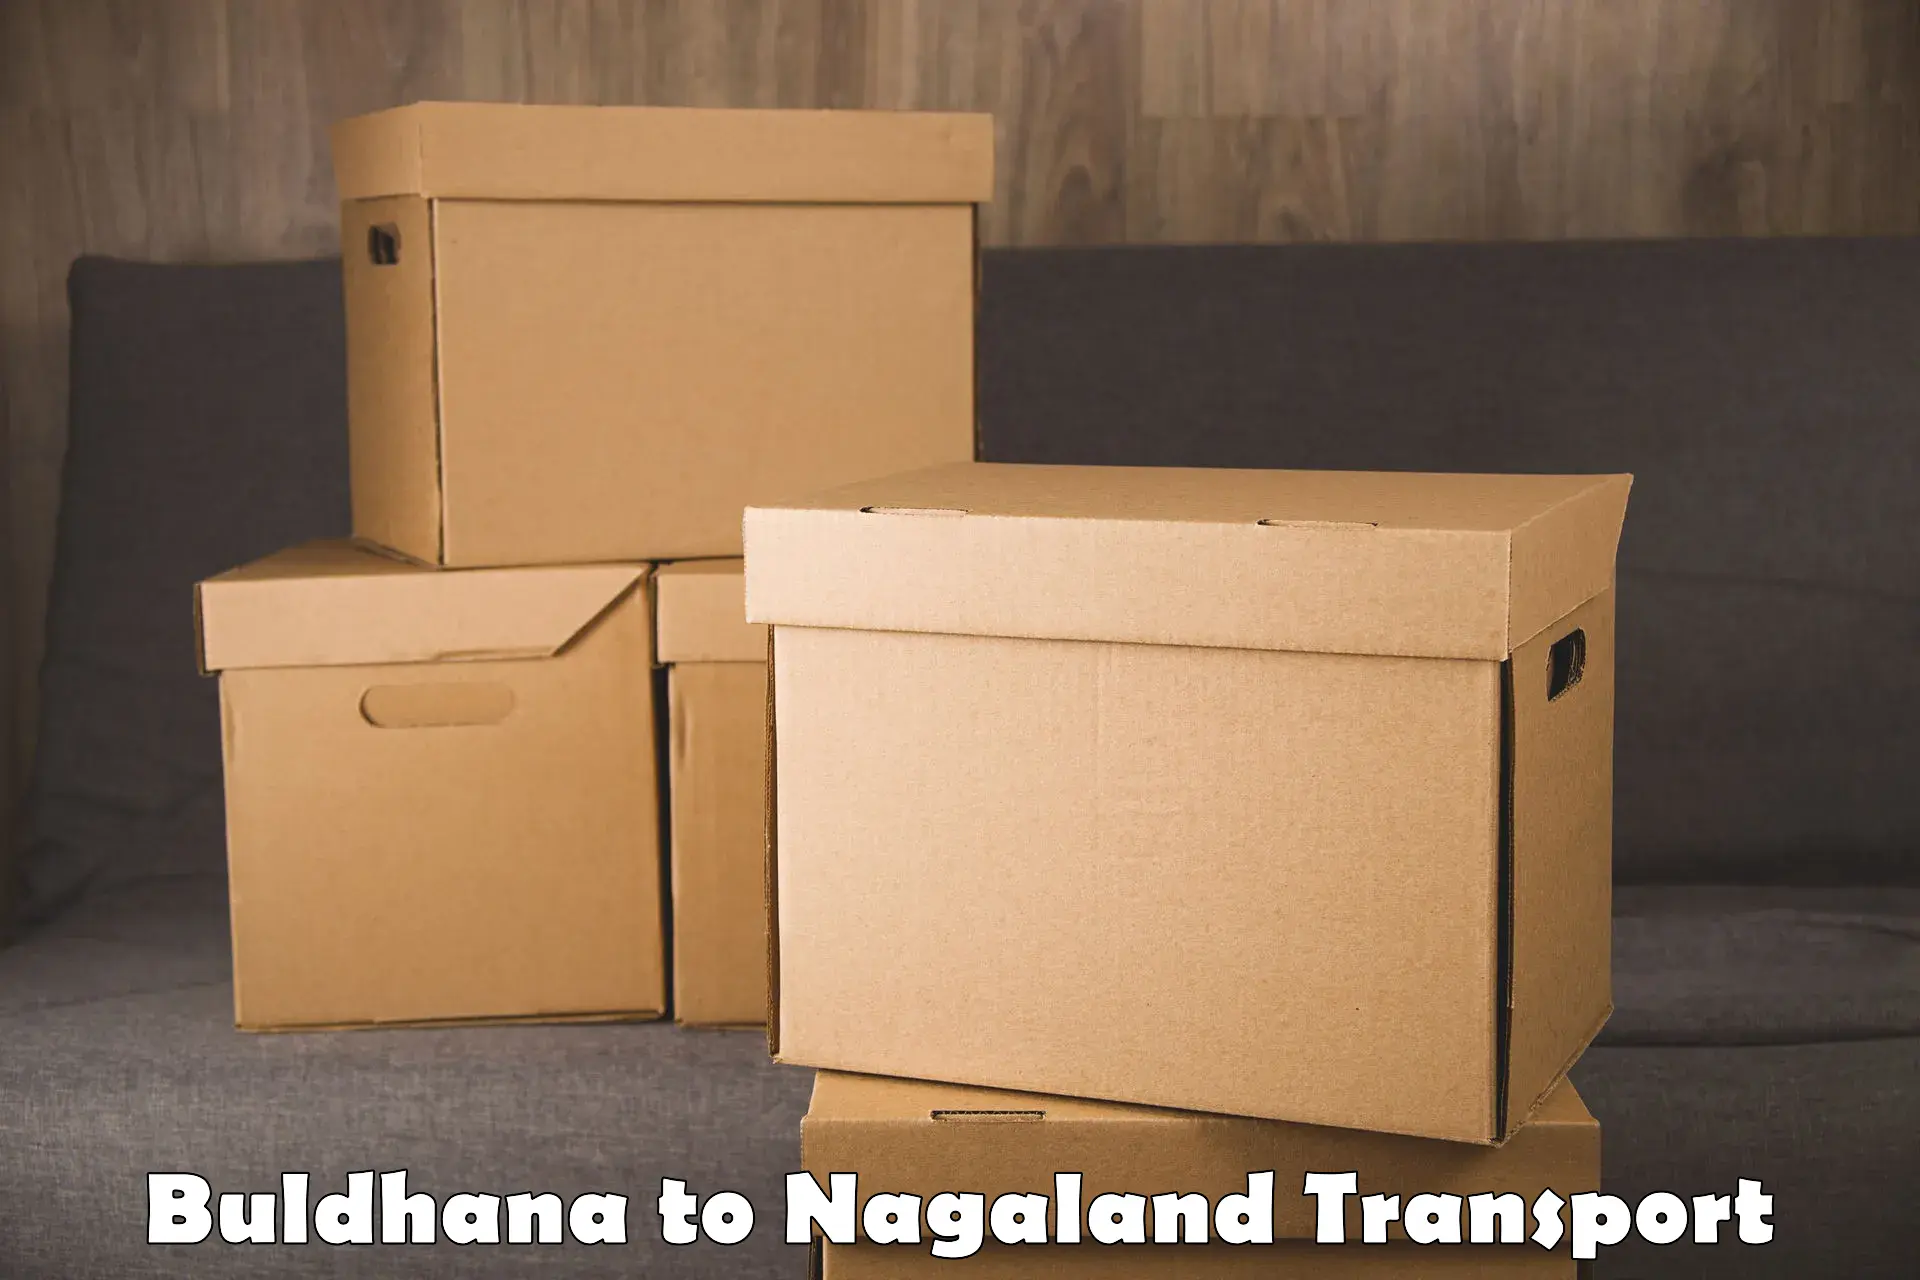 Interstate transport services Buldhana to NIT Nagaland